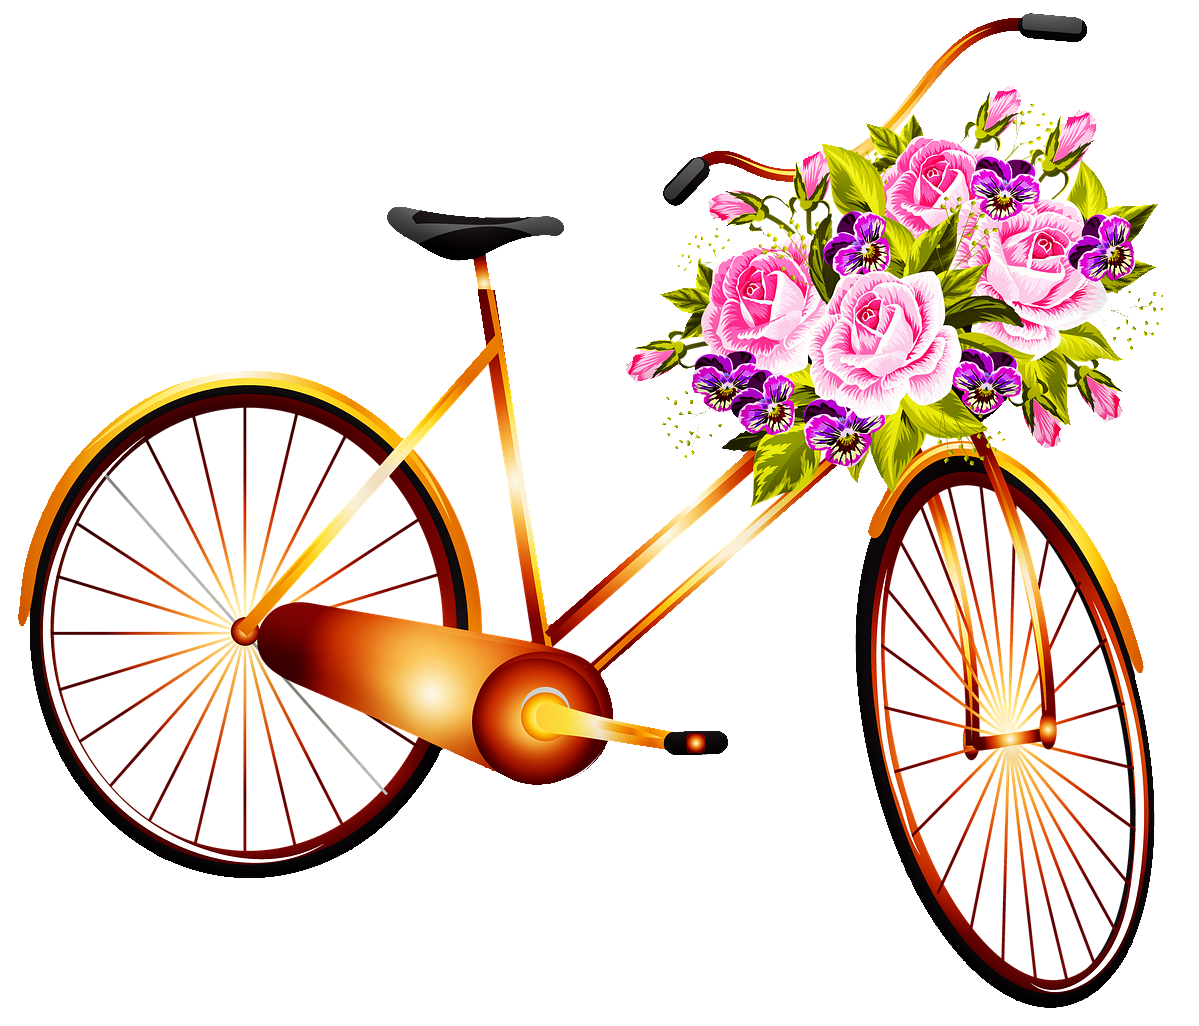 Картинка велосипед. Велосипед с цветами. Велосипед рисунок. Рисунок велосипед с корзинкой цветов. Велосипед с цветами на прозрачном фоне.